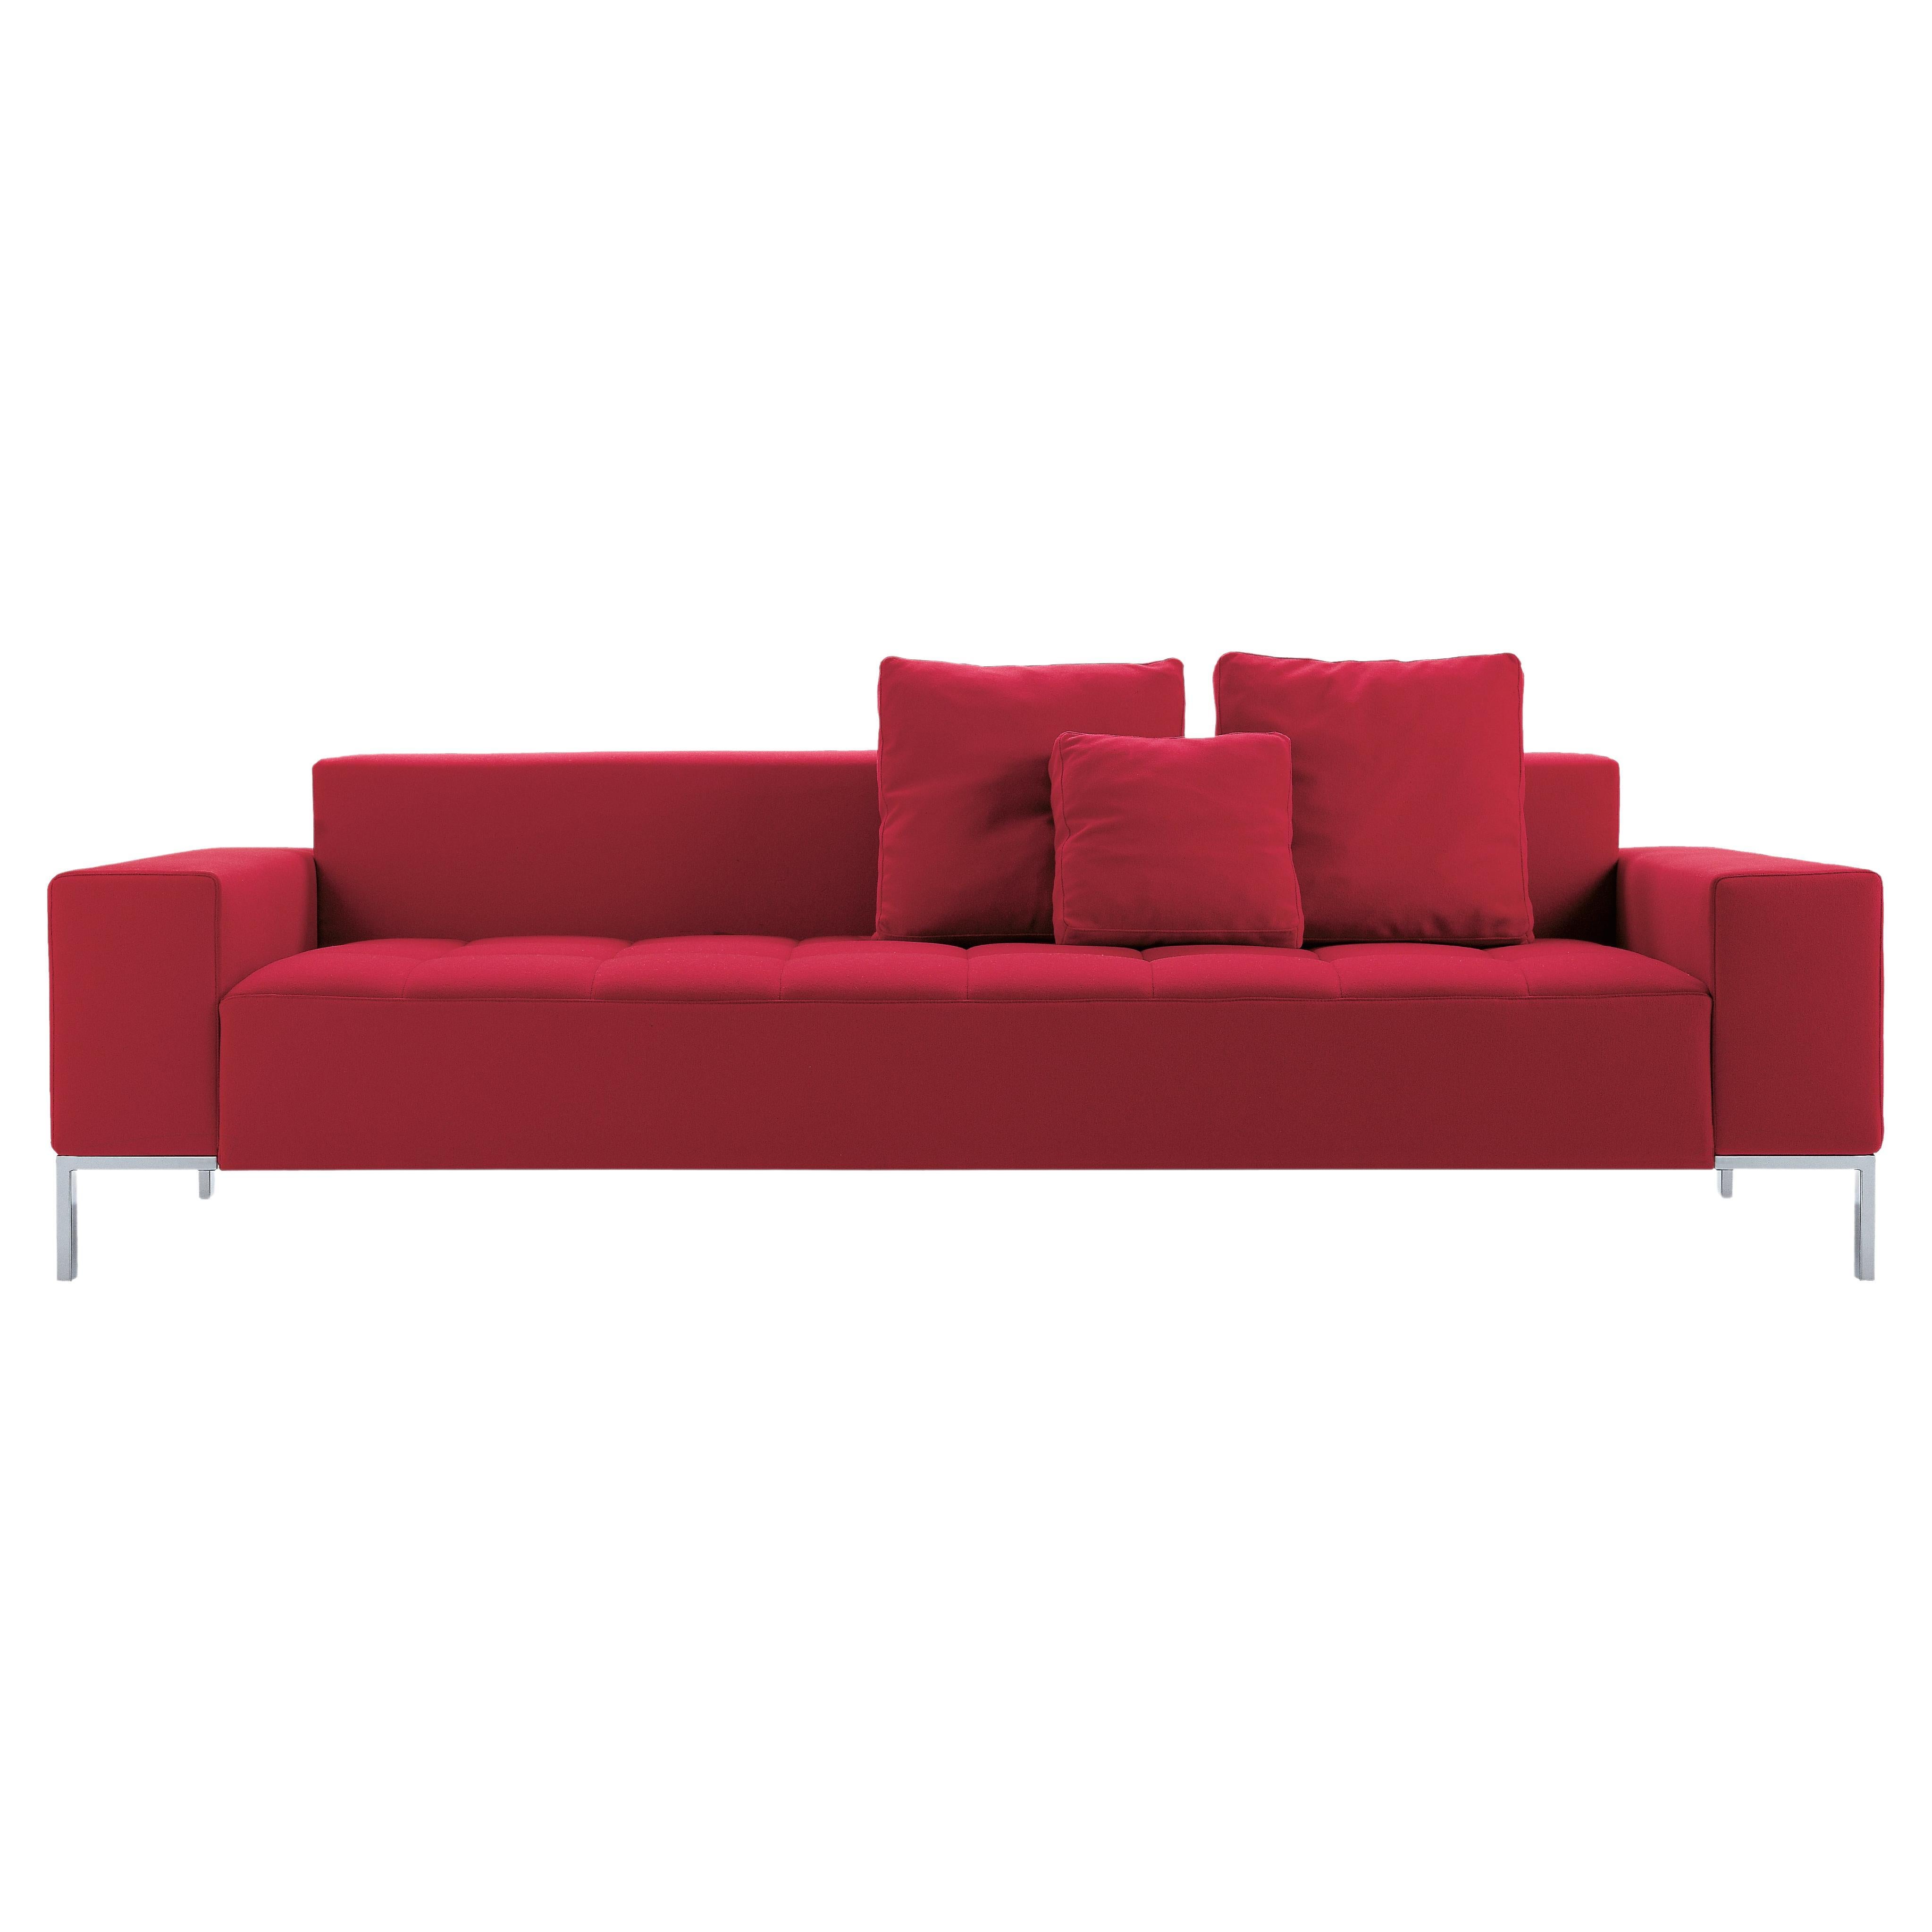 Zanotta Alfa Monobloc Sofa in Teolo Red Fabric by Emaf Progetti